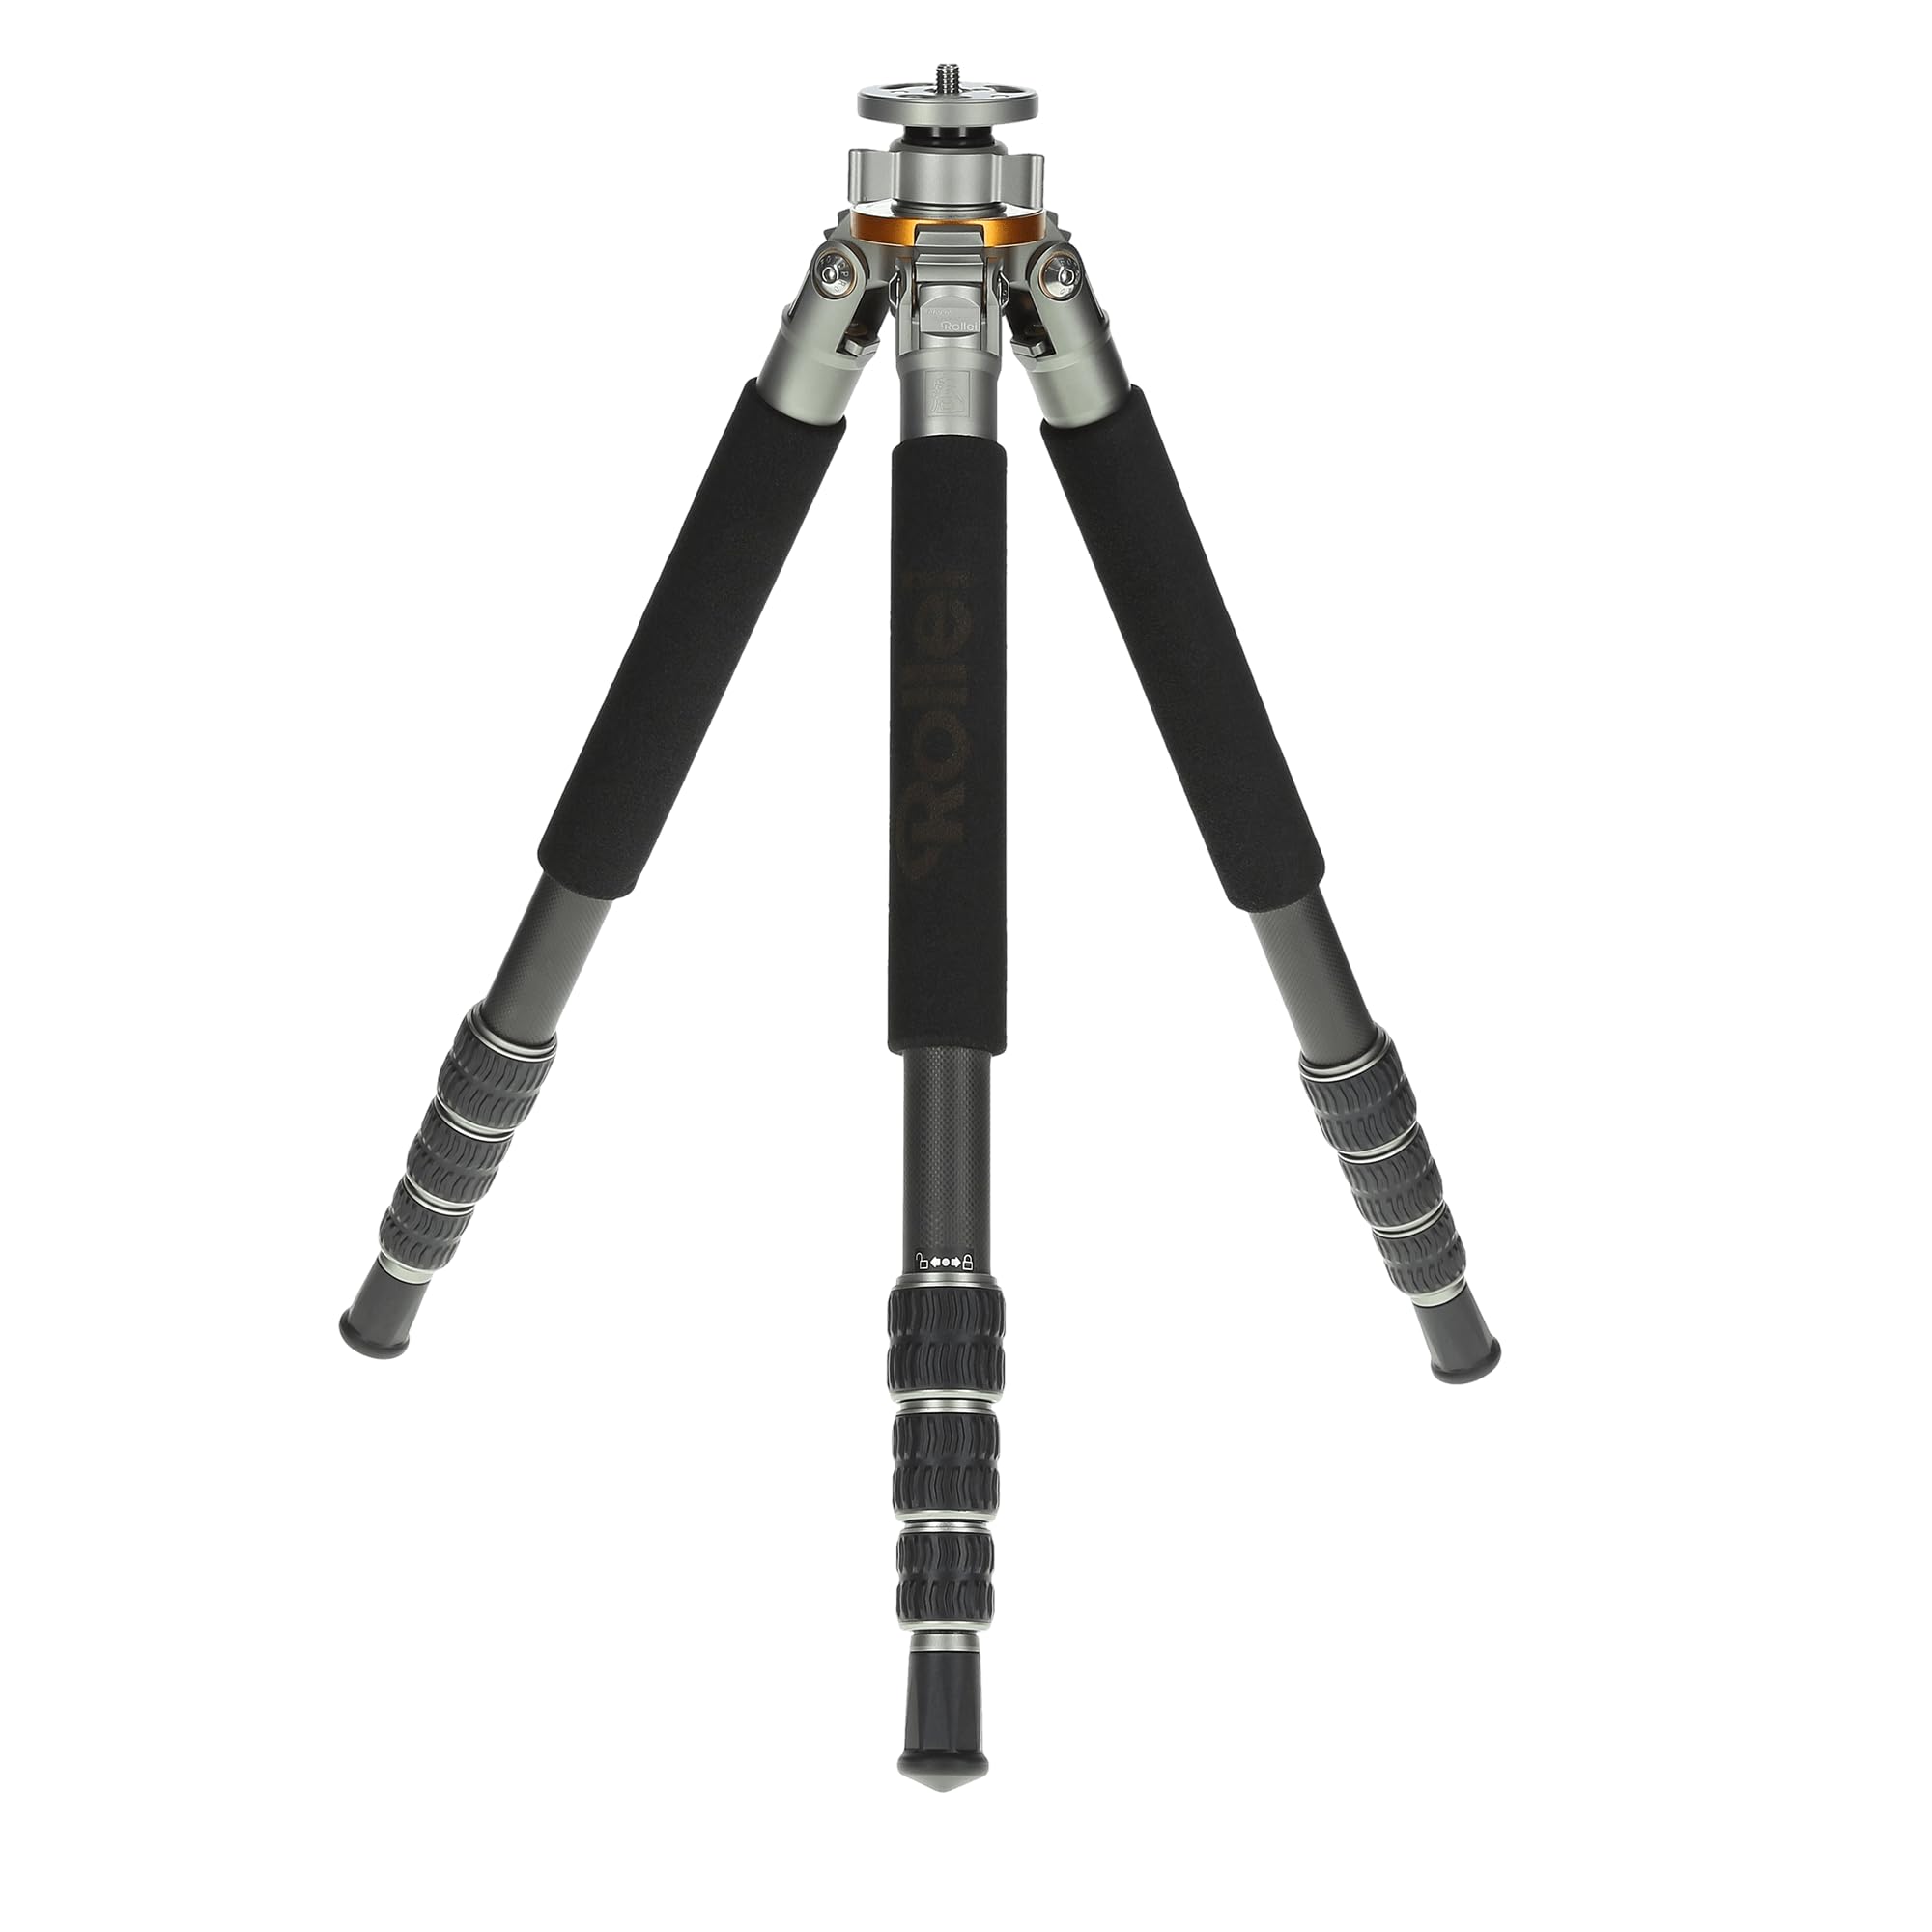 Rollei Lion Rock 20 Mark II – Carbon Stativ,Kamera Stativ mit 20 kg Tragkraft, ideal für Reise und Naturfotografie, perfekt für Spiegelreflex(DSLR) u. Systemkameras(DSLM) mit integrierten Spikes